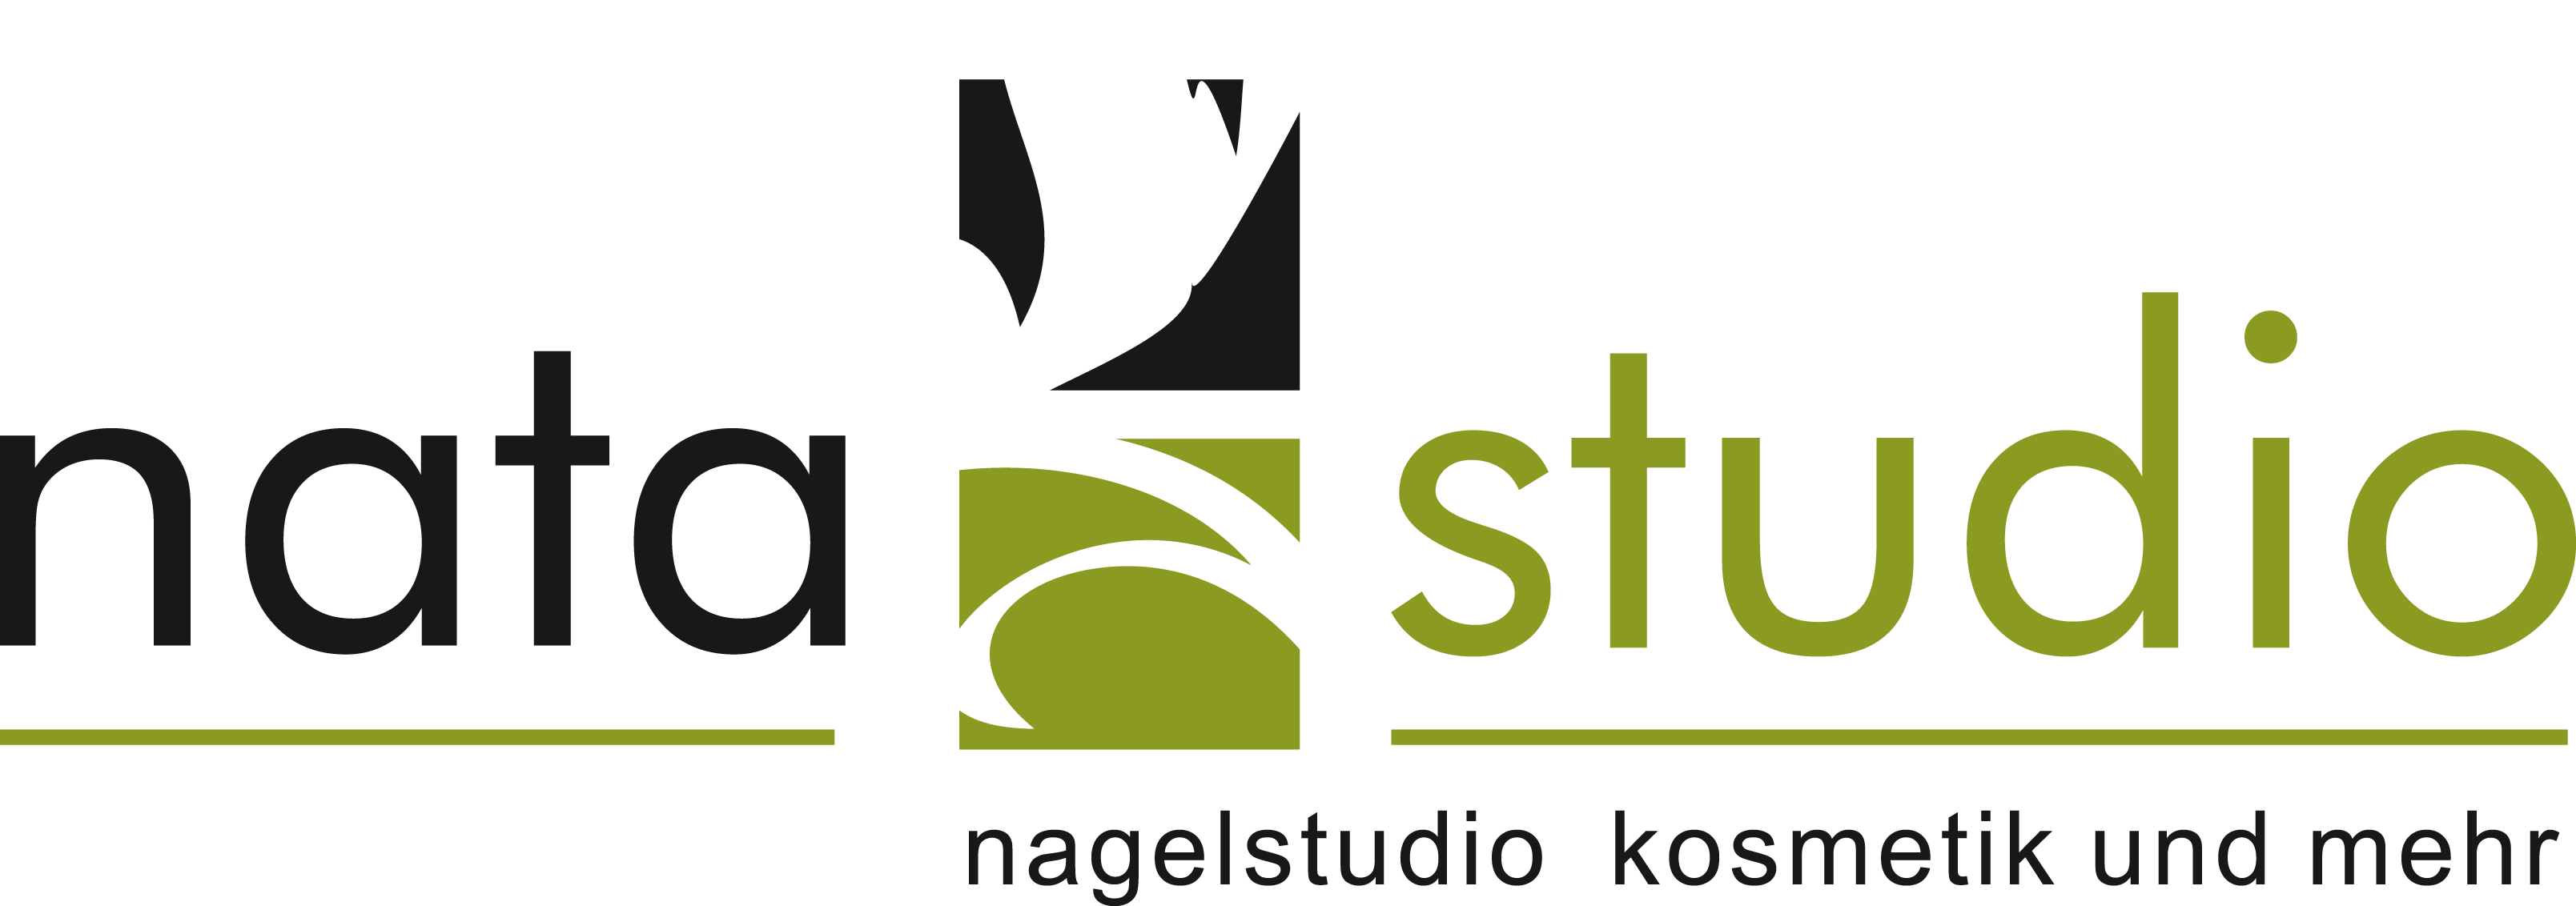 Nata Studio